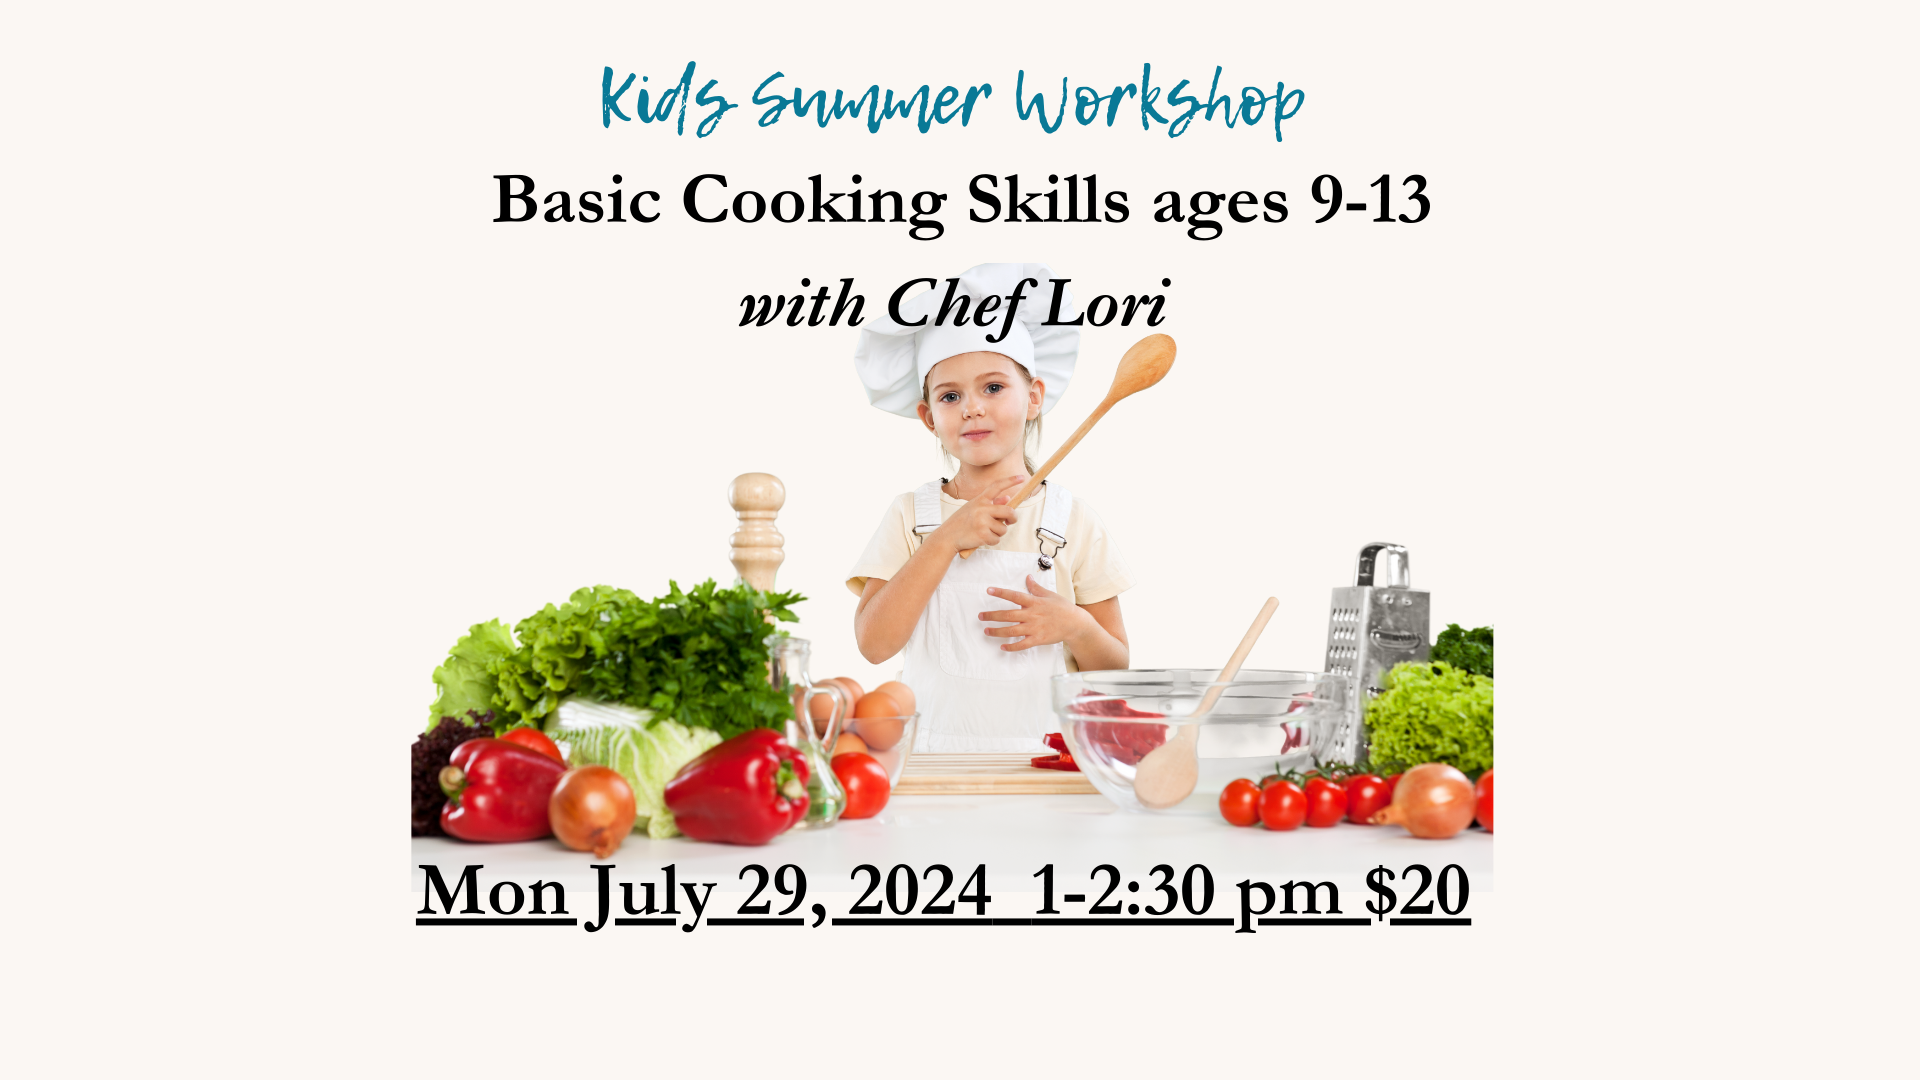 Kids Summer Workshop ages 9-13 July 29, 2024 1-2:30 $20